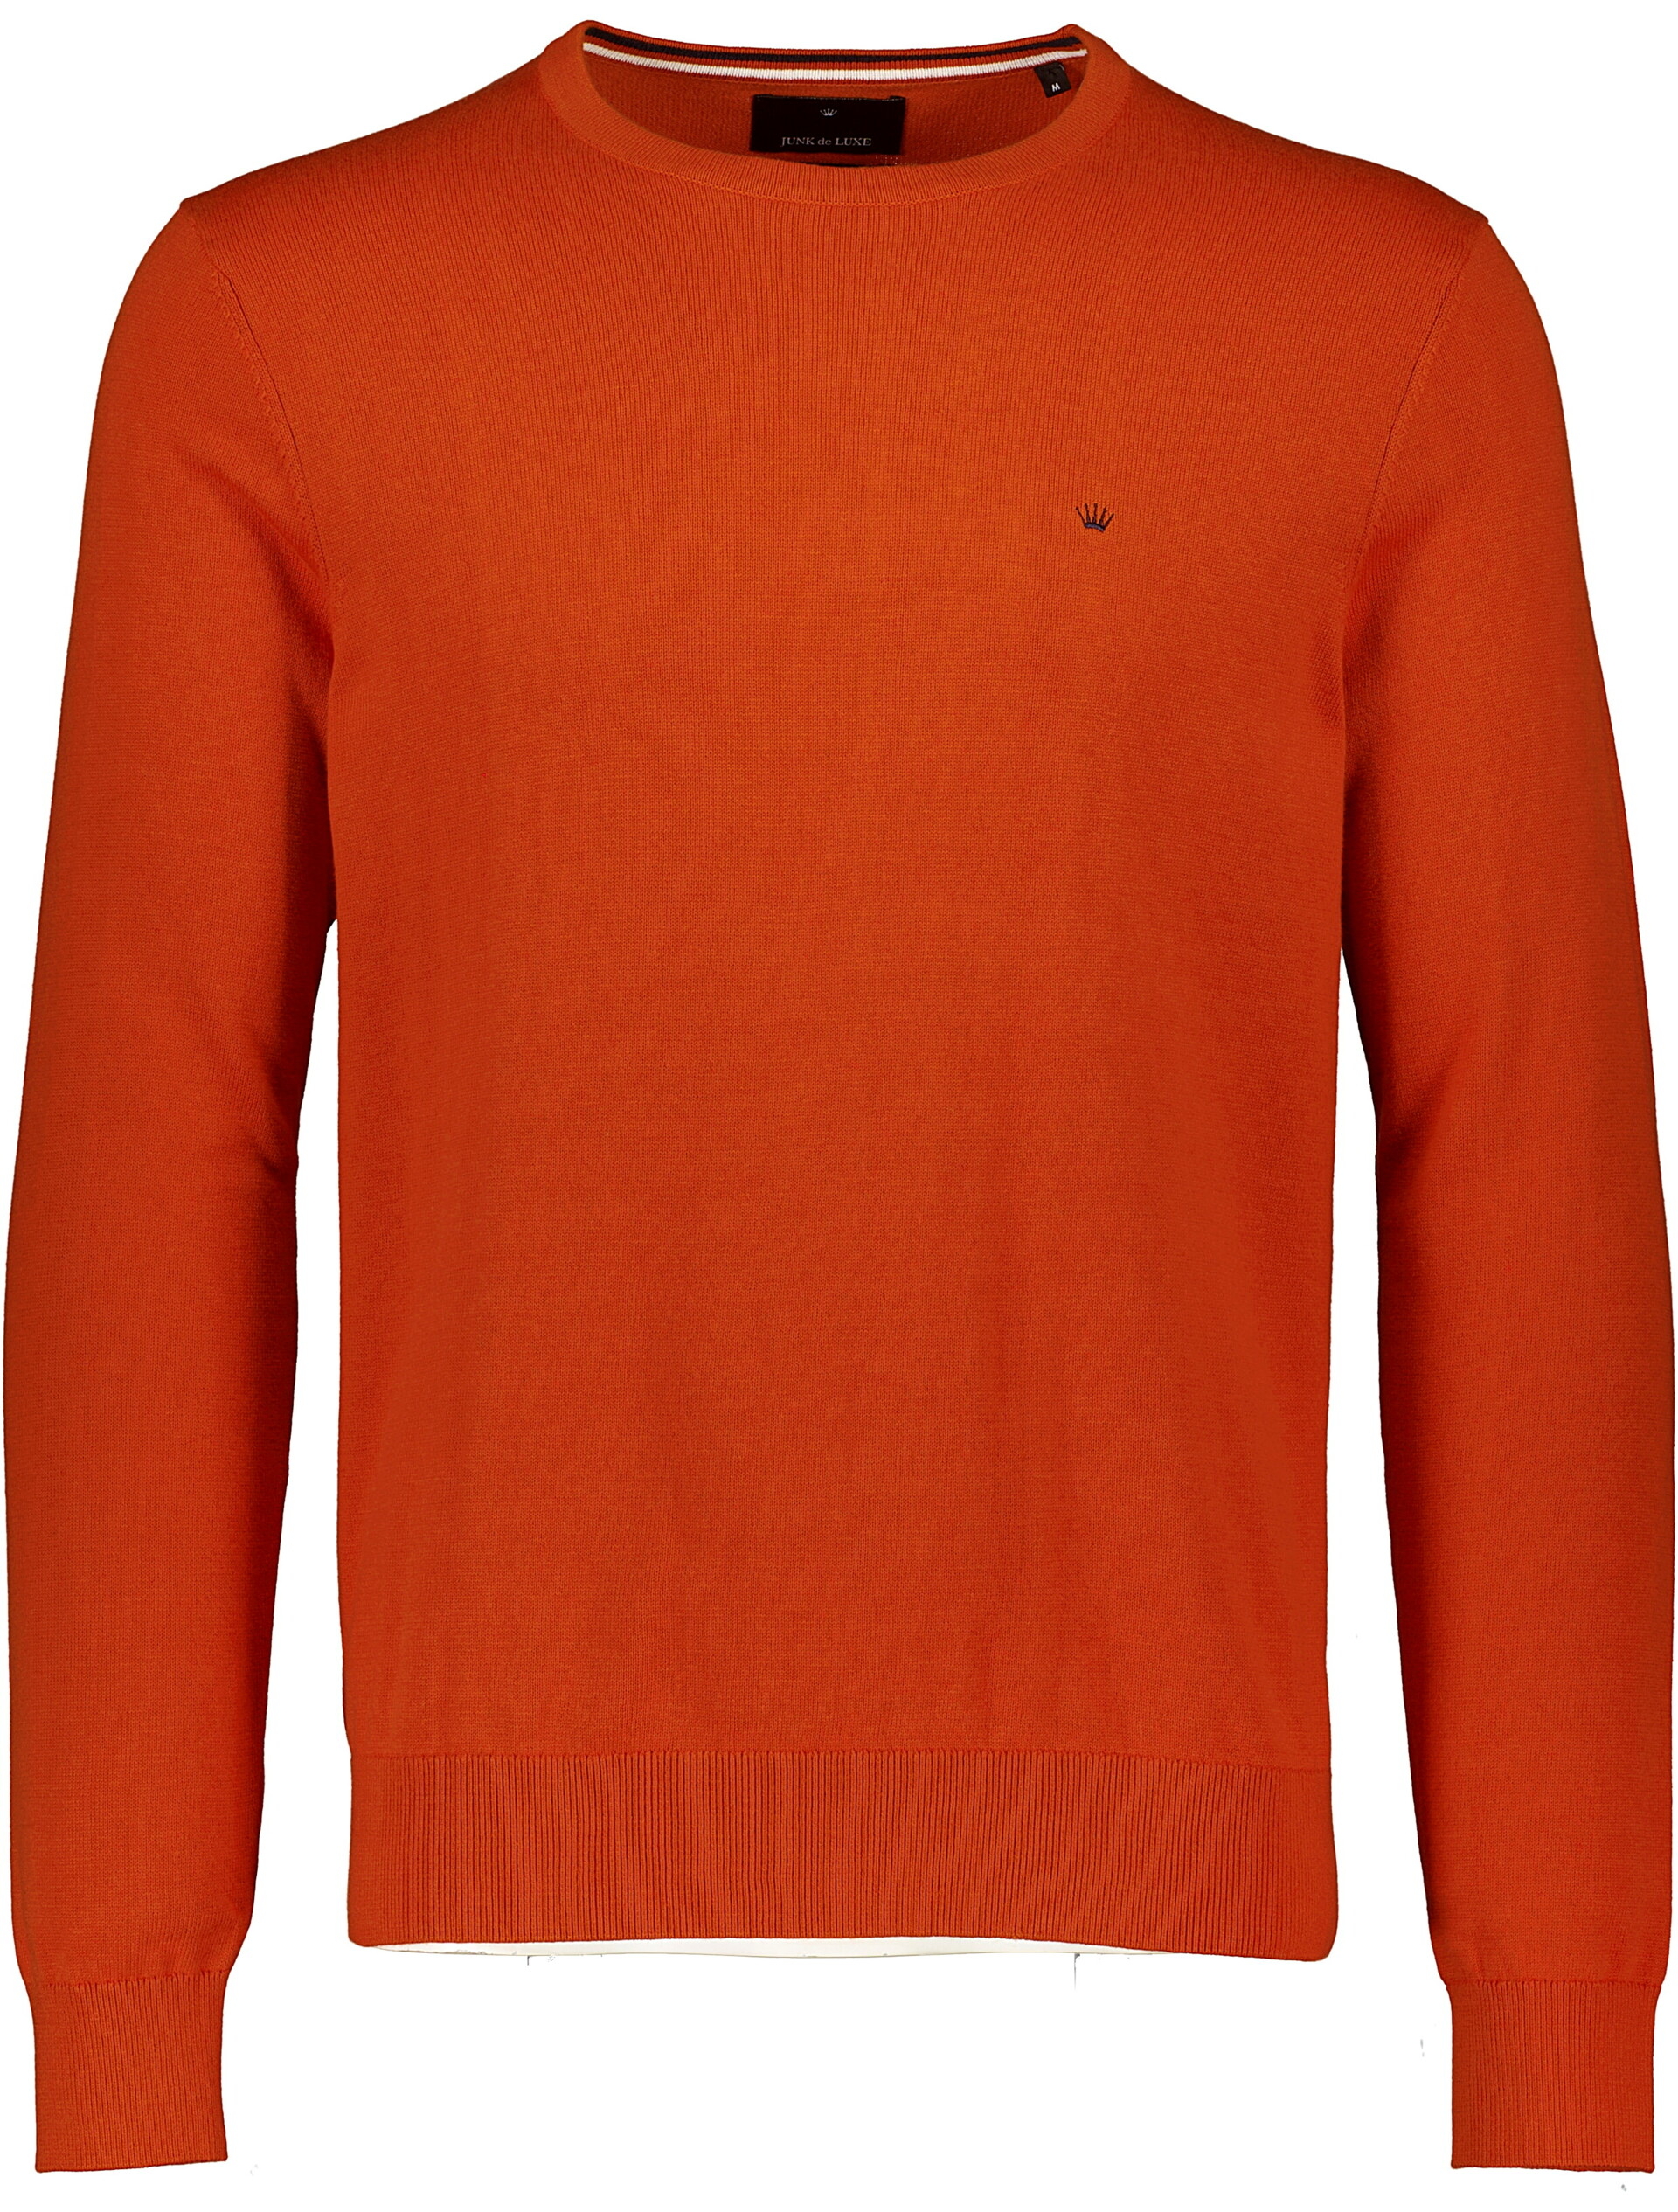 Junk de Luxe Knitwear orange / orange